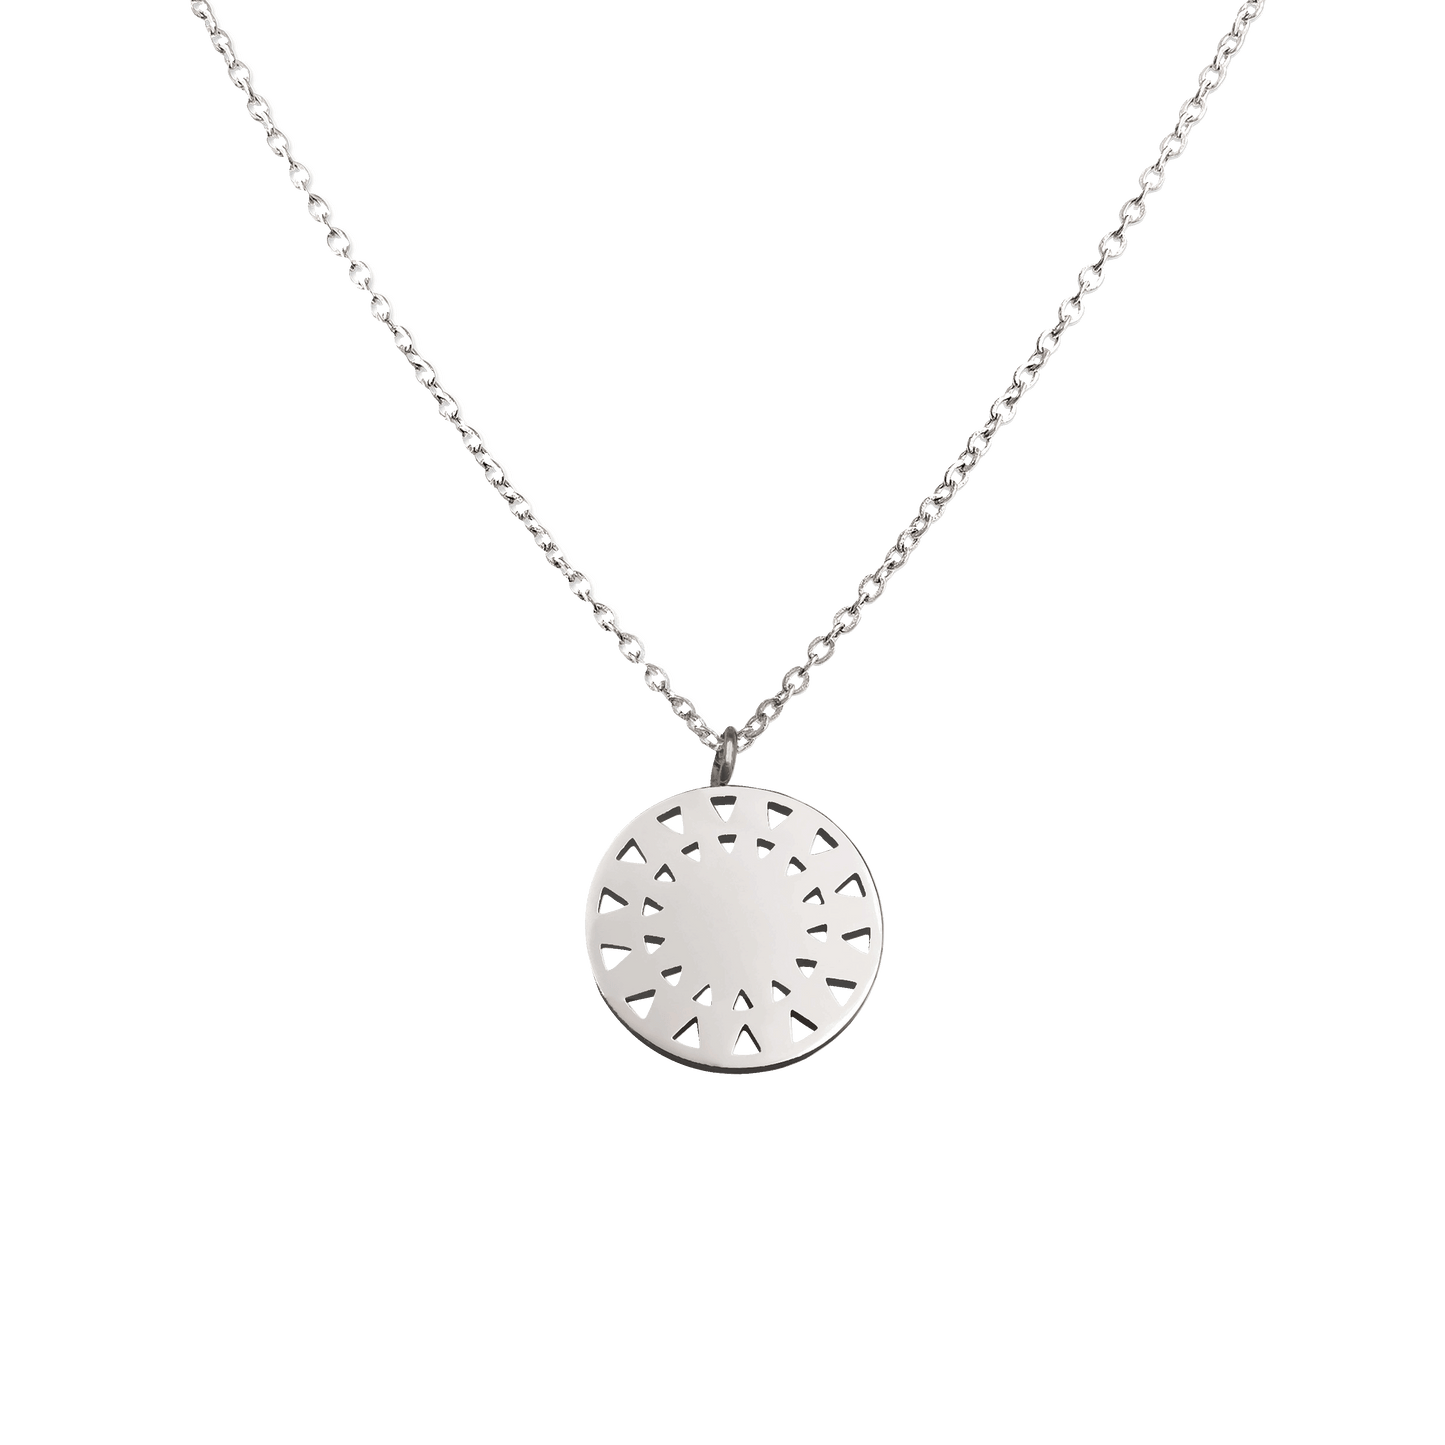 Marisol Necklace Silver